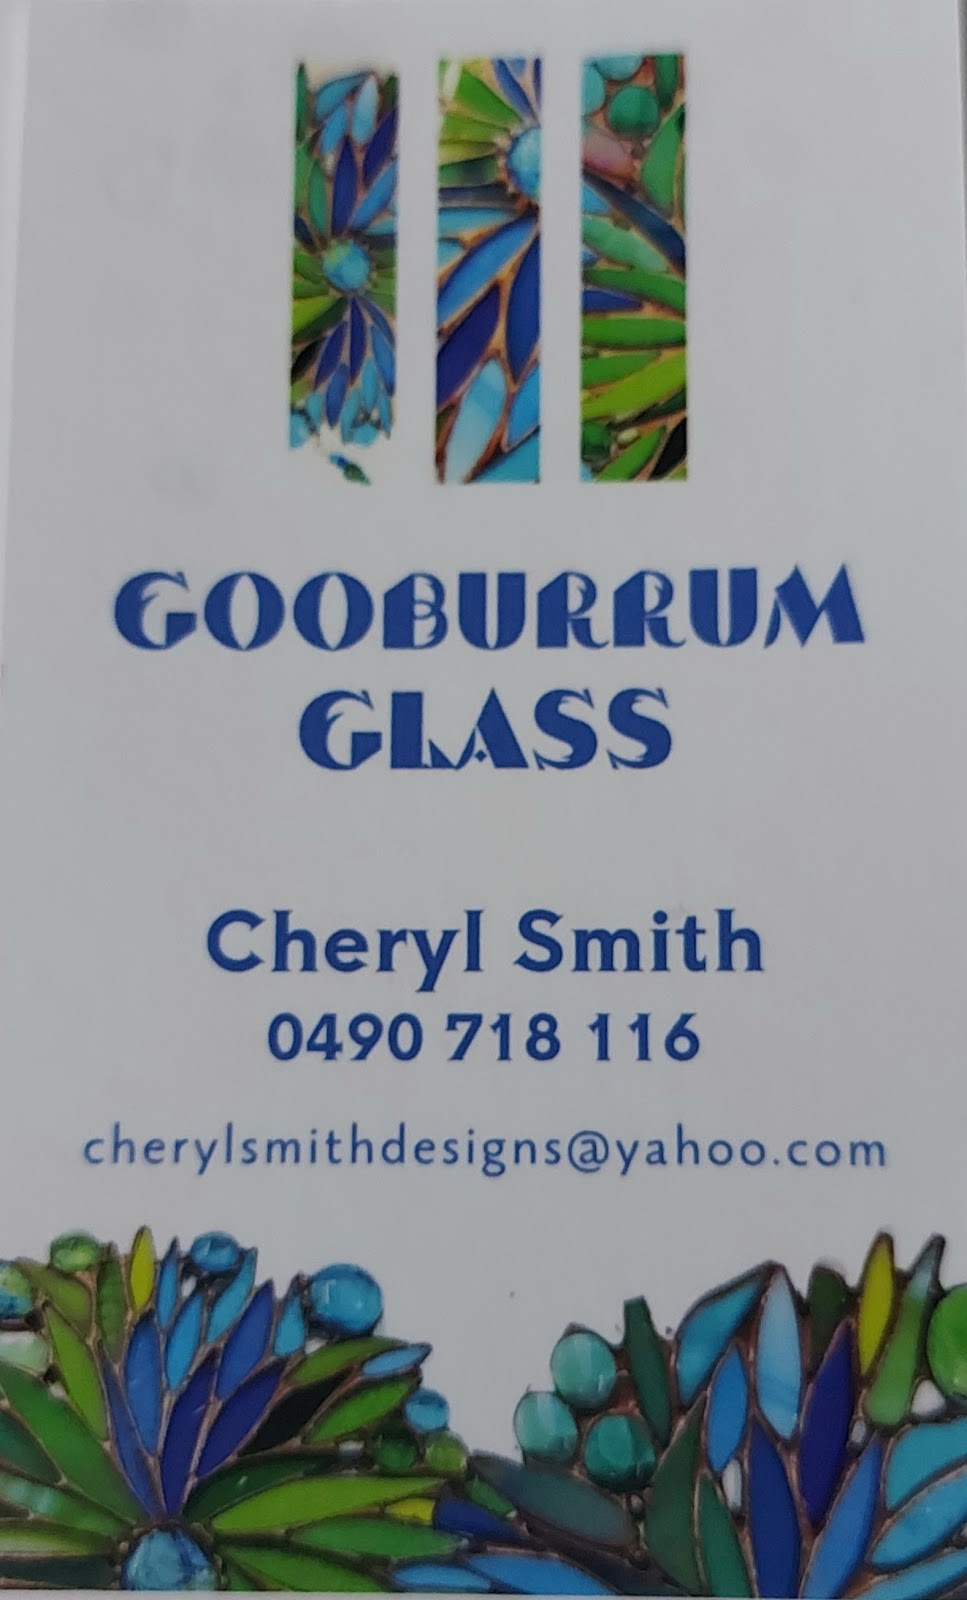 Gooburrum Glass | store | 256 Gooburrum Rd, Gooburrum QLD 4670, Australia | 0490718116 OR +61 490 718 116